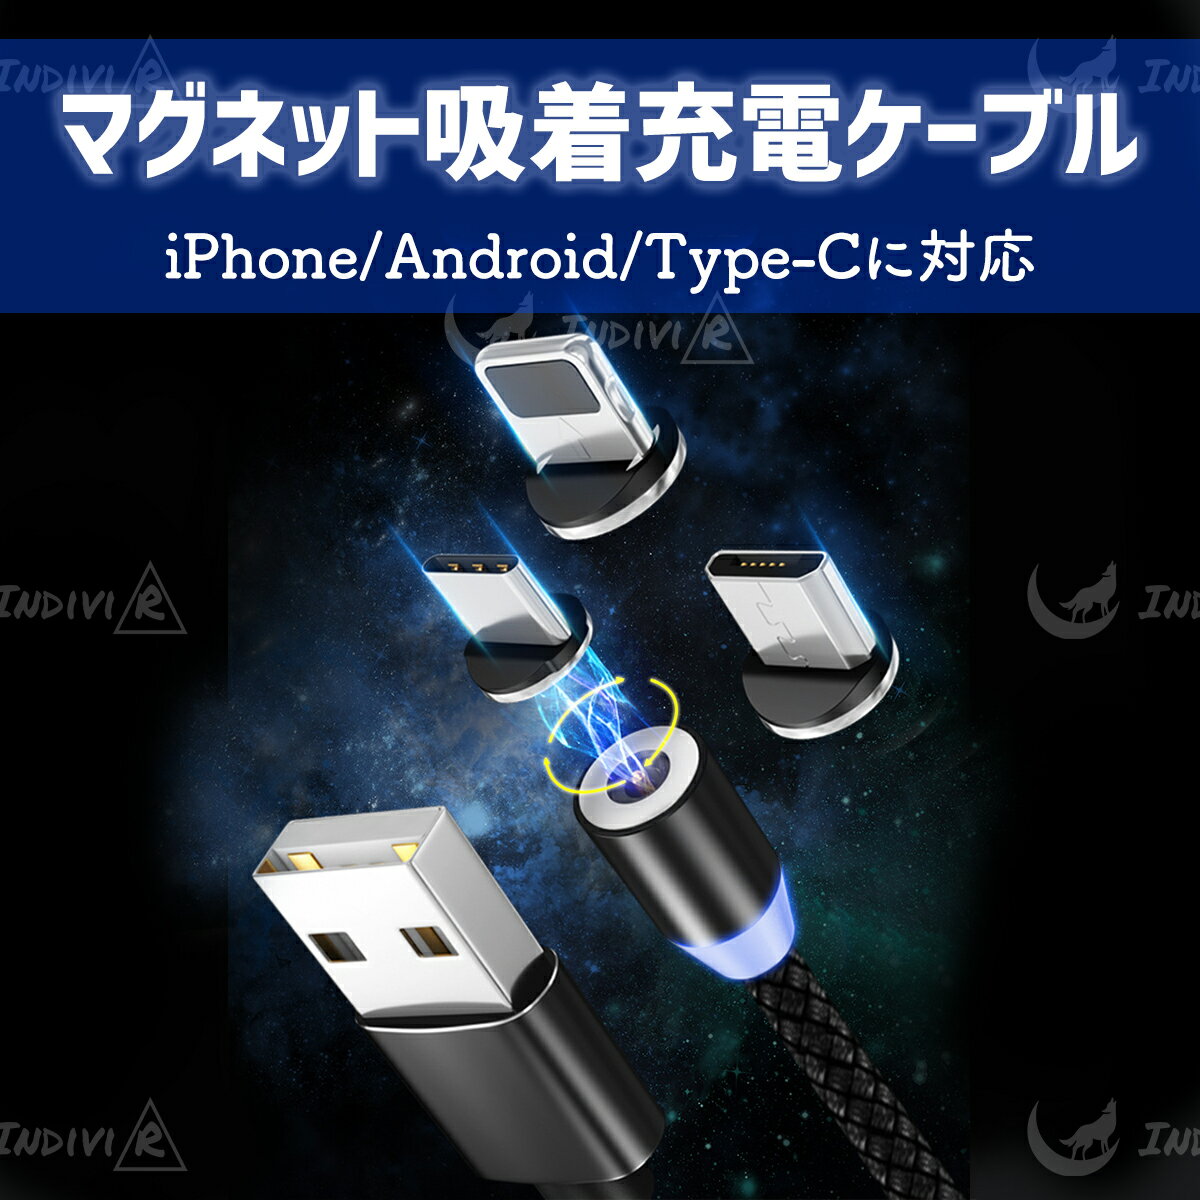 マグネット式 3in1 充電ケーブル iPhone Android Type-C Micro USB 充電器 端子ホルダー付き 高耐久 ポイント消化